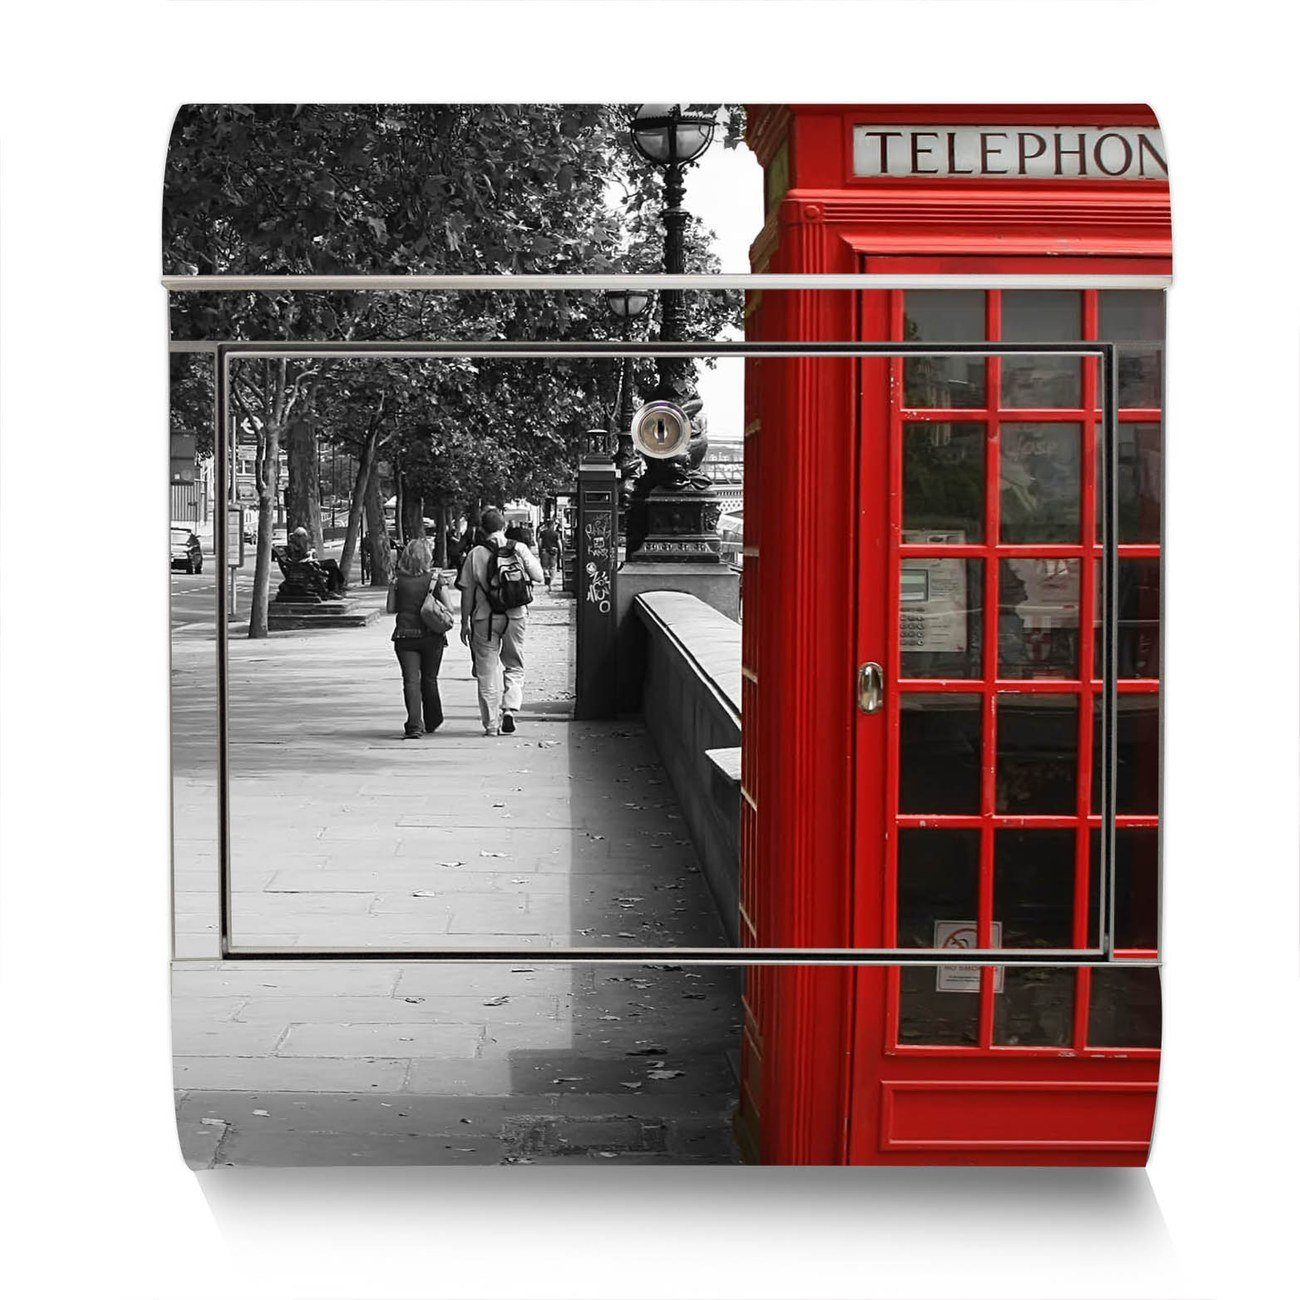 Wandbriefkasten x mit Edelstahl Zeitungsfach), London Red 38 42,5 groß, Telephone (Wandbriefkasten x12cm banjado